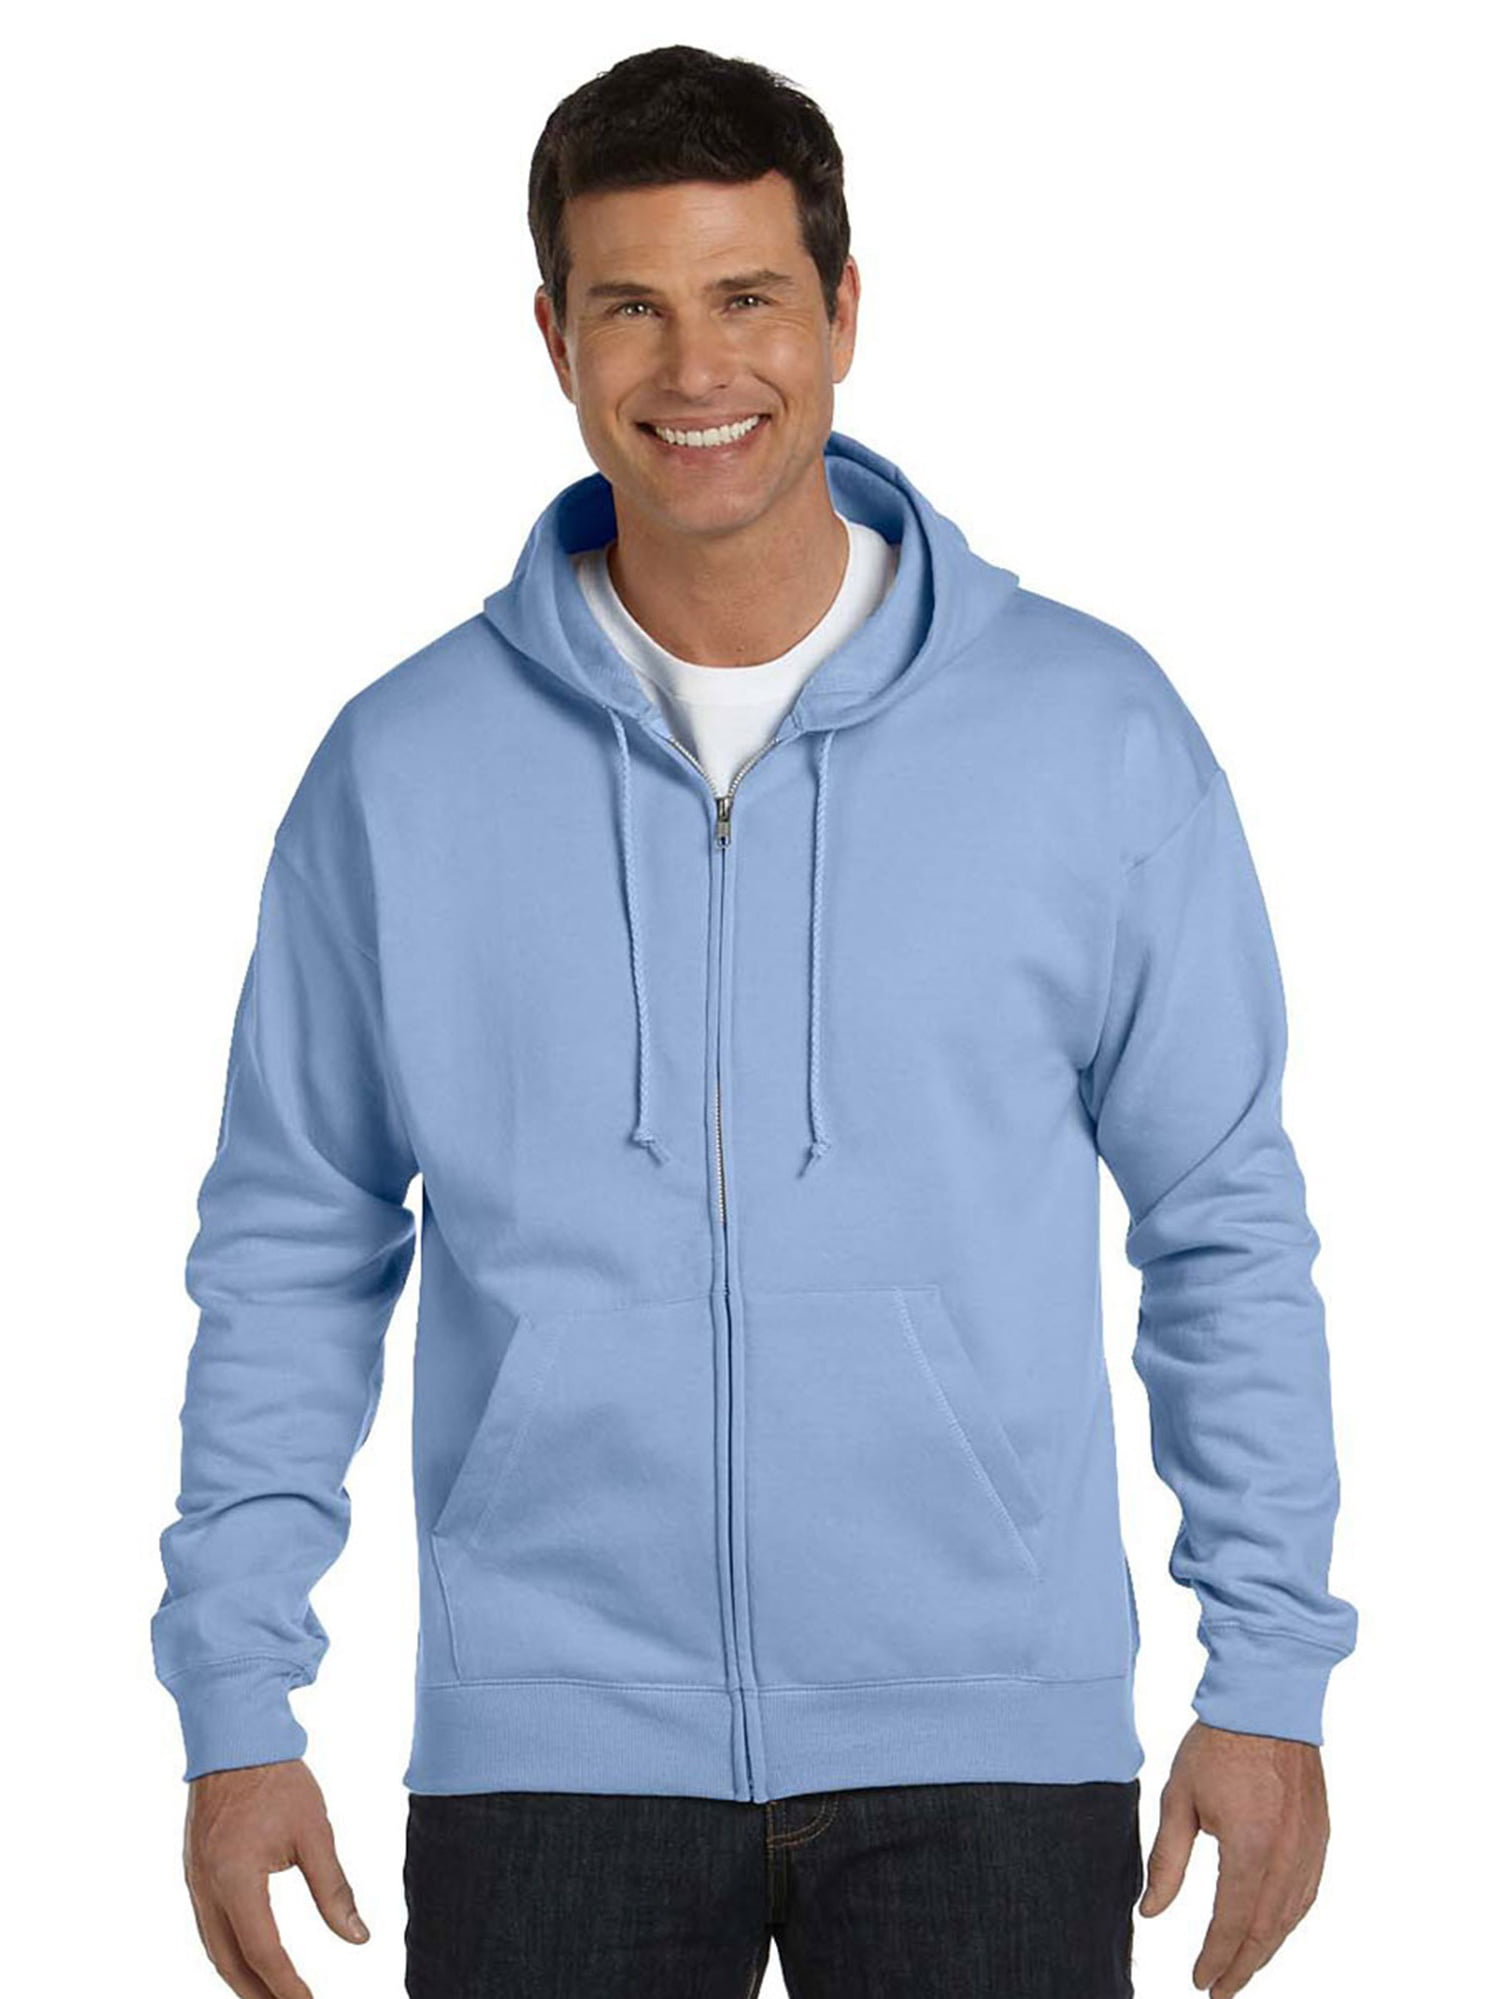 Hanes - Hanes Men's EcoSmart Full Zip Hooded Sweatshirt - Walmart.com ...